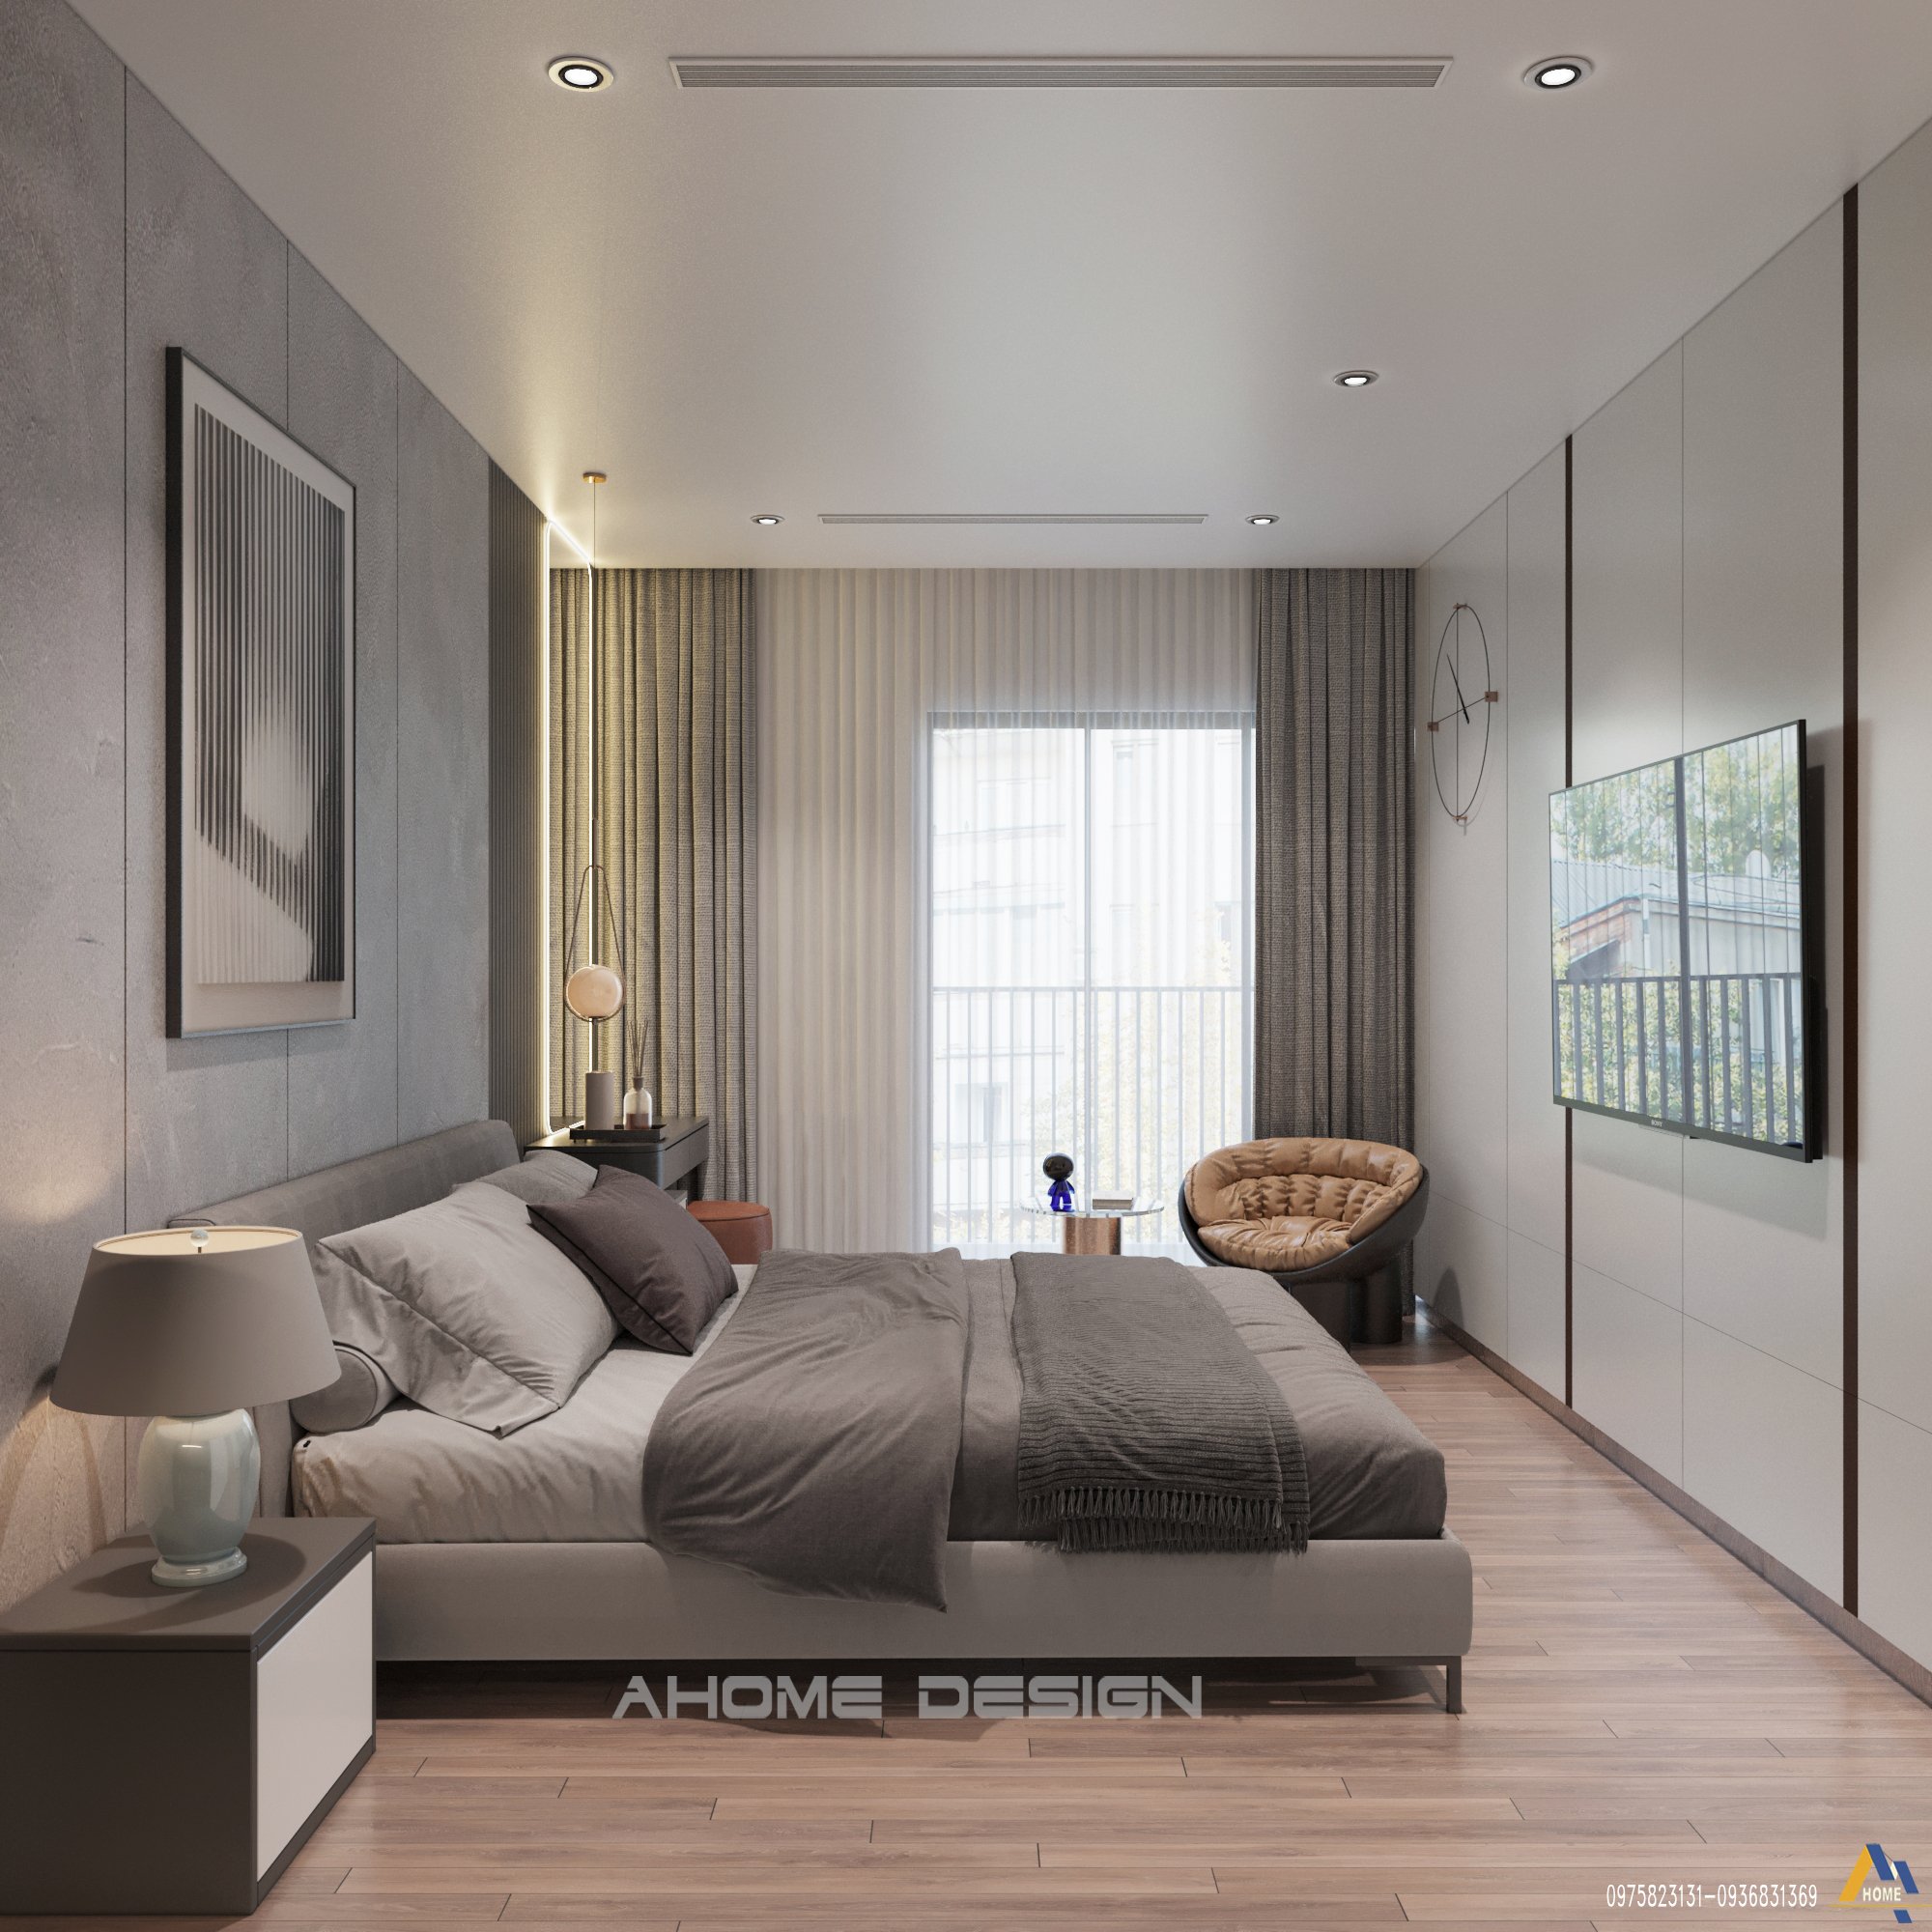 Phòng ngủ hiện đại, tối giản trong mẫu thiết kế nội thất Mipec Rubik 360